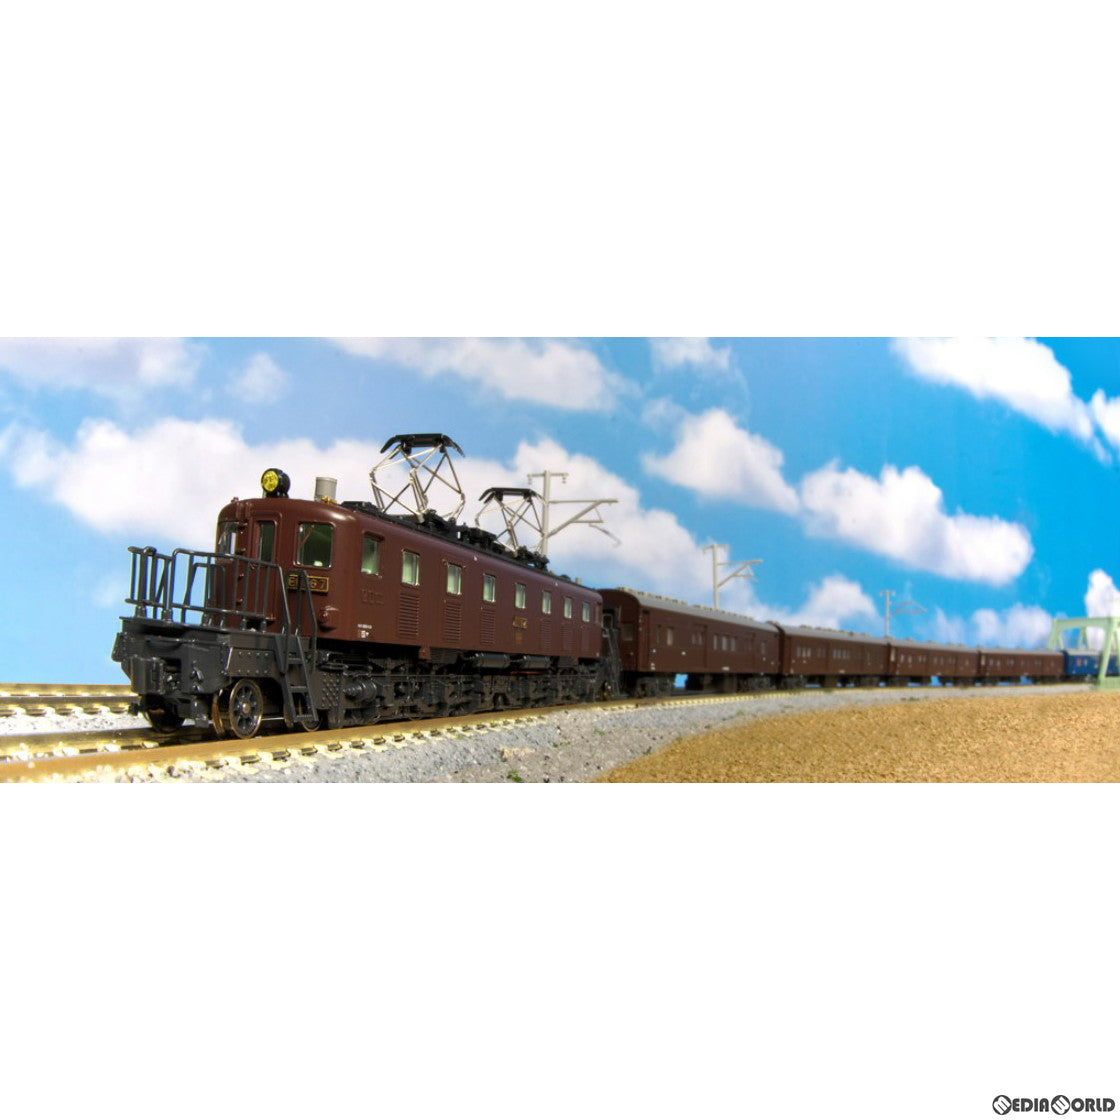 【新品即納】[RWM]3070-2 EF56 1次形(動力付き) Nゲージ 鉄道模型 KATO(カトー)(20230929)